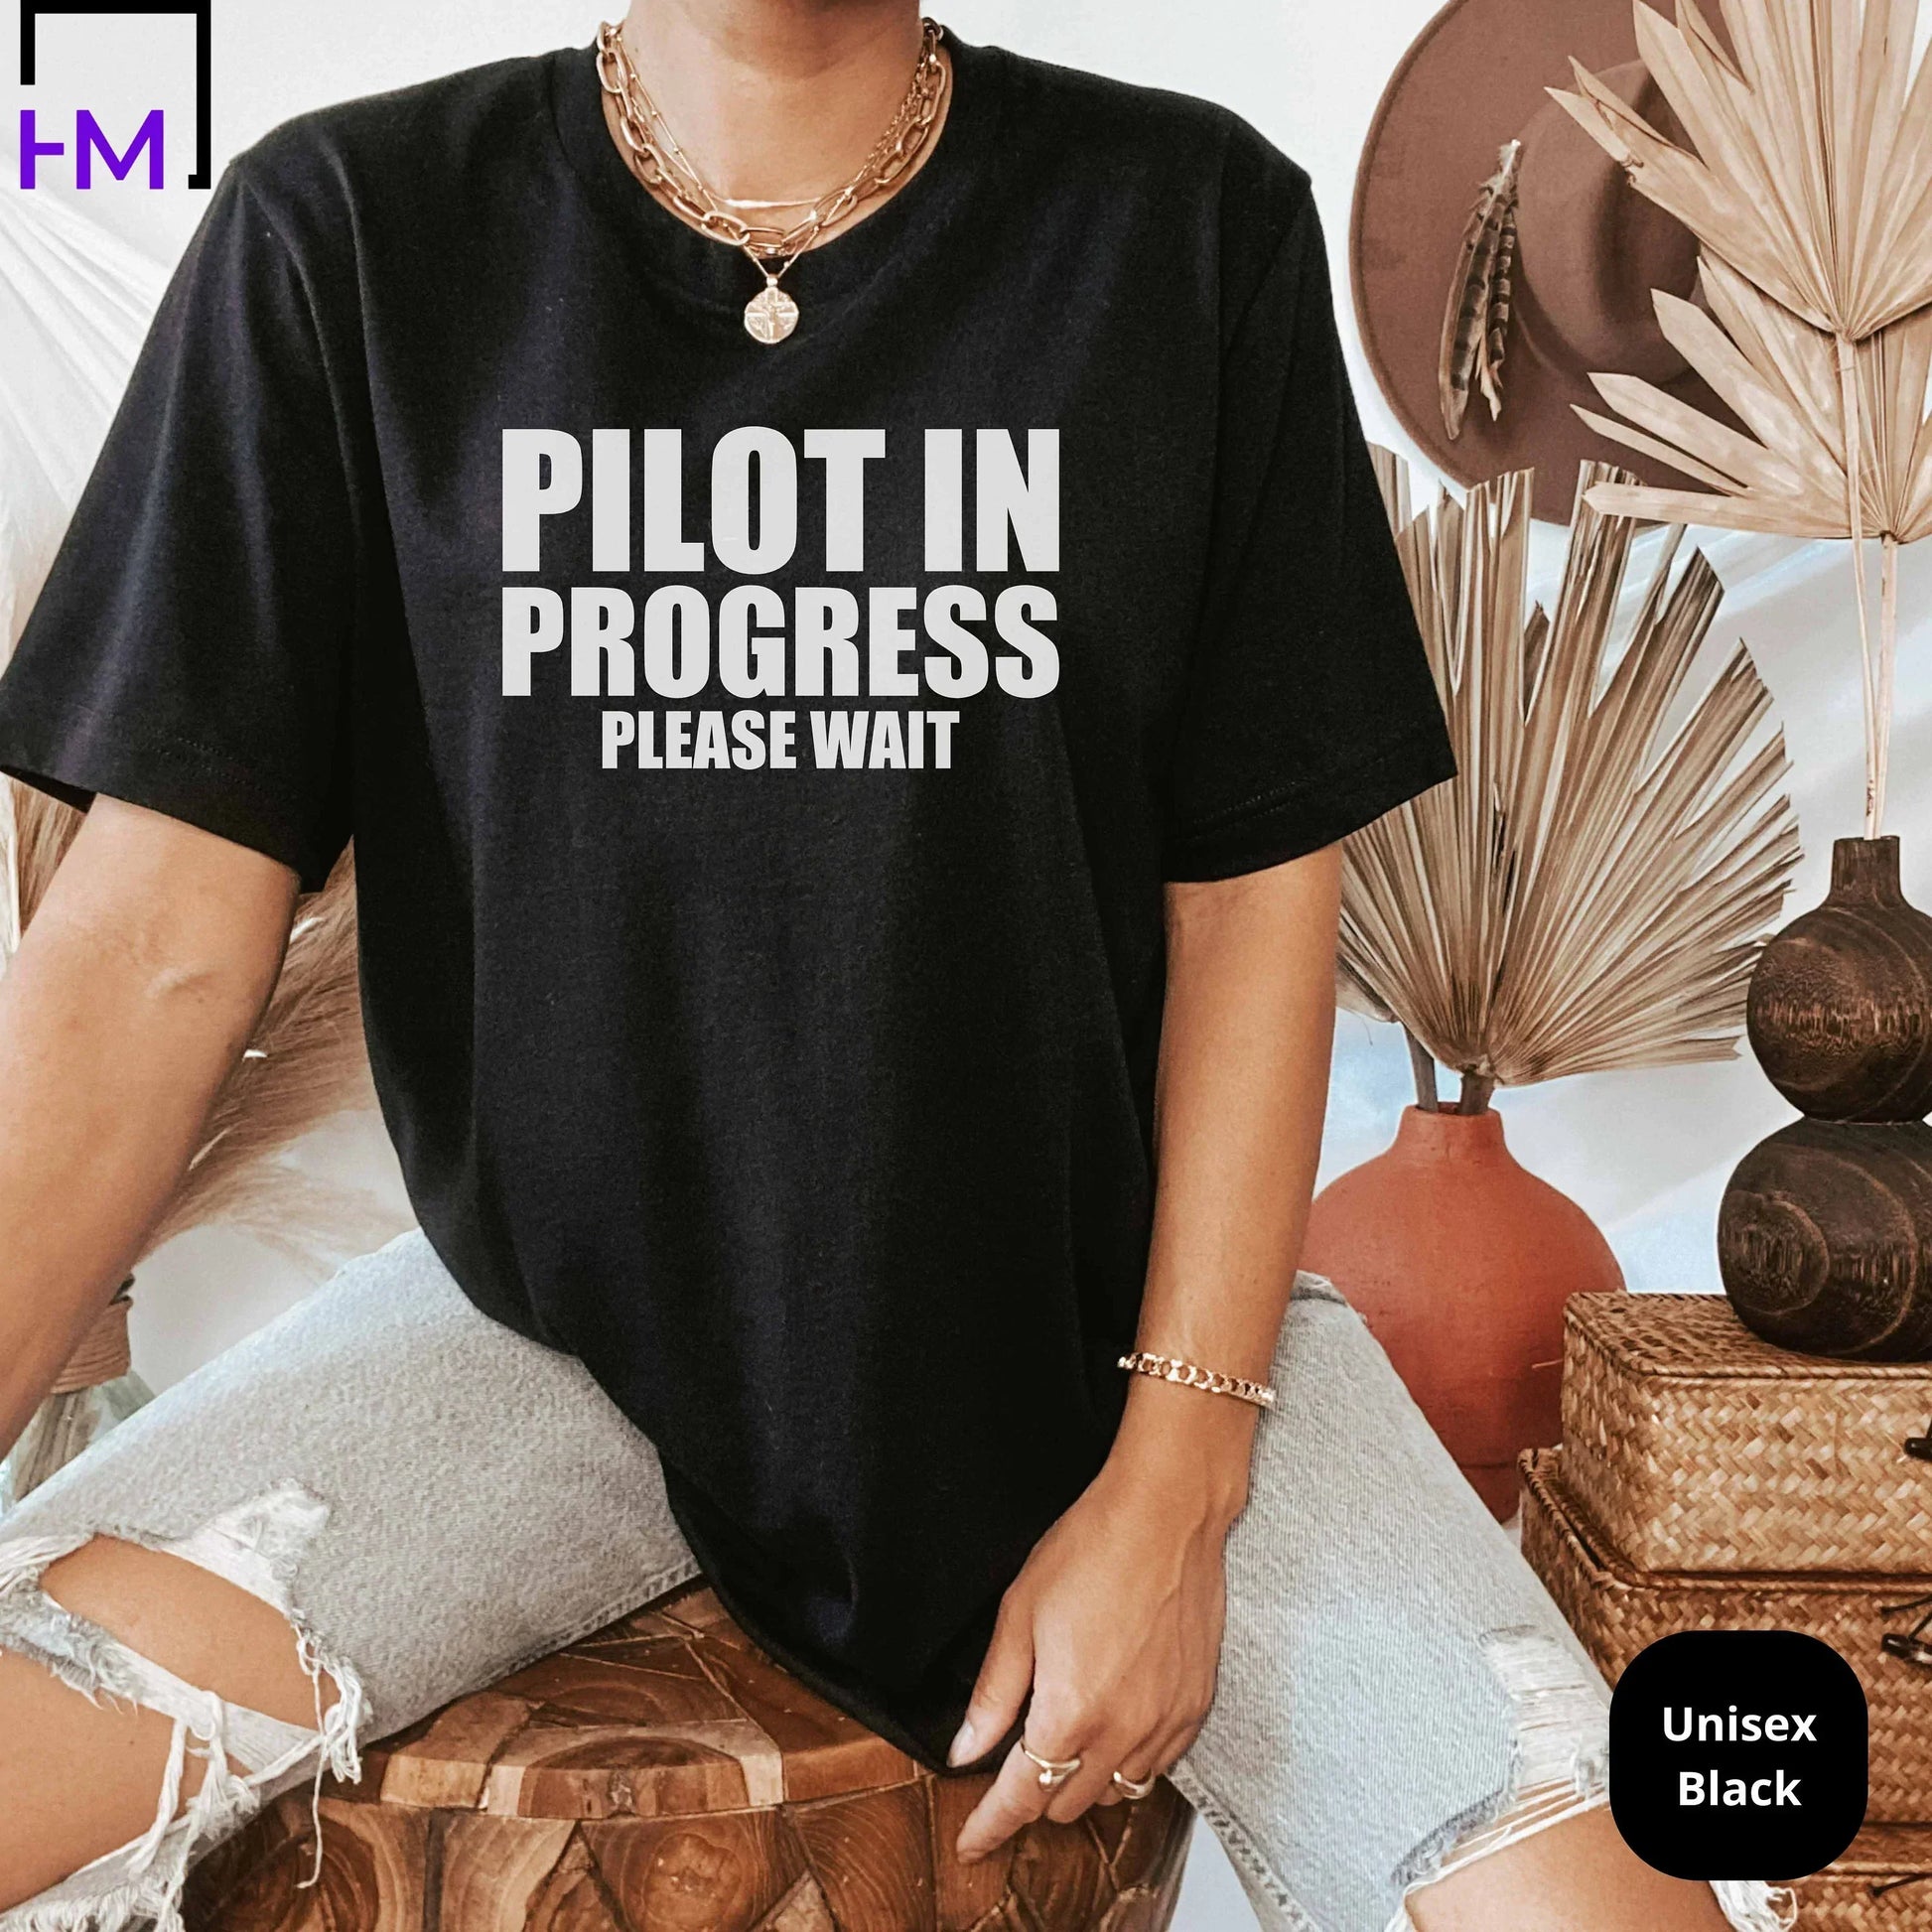 New Pilot Shirt, Airplane Mode Shirt, Aviation Graduate Student, Pilot Gift for Traveler, Adventurer Gift, Frequent Flyer Vacation Shirt HMDesignStudioUS